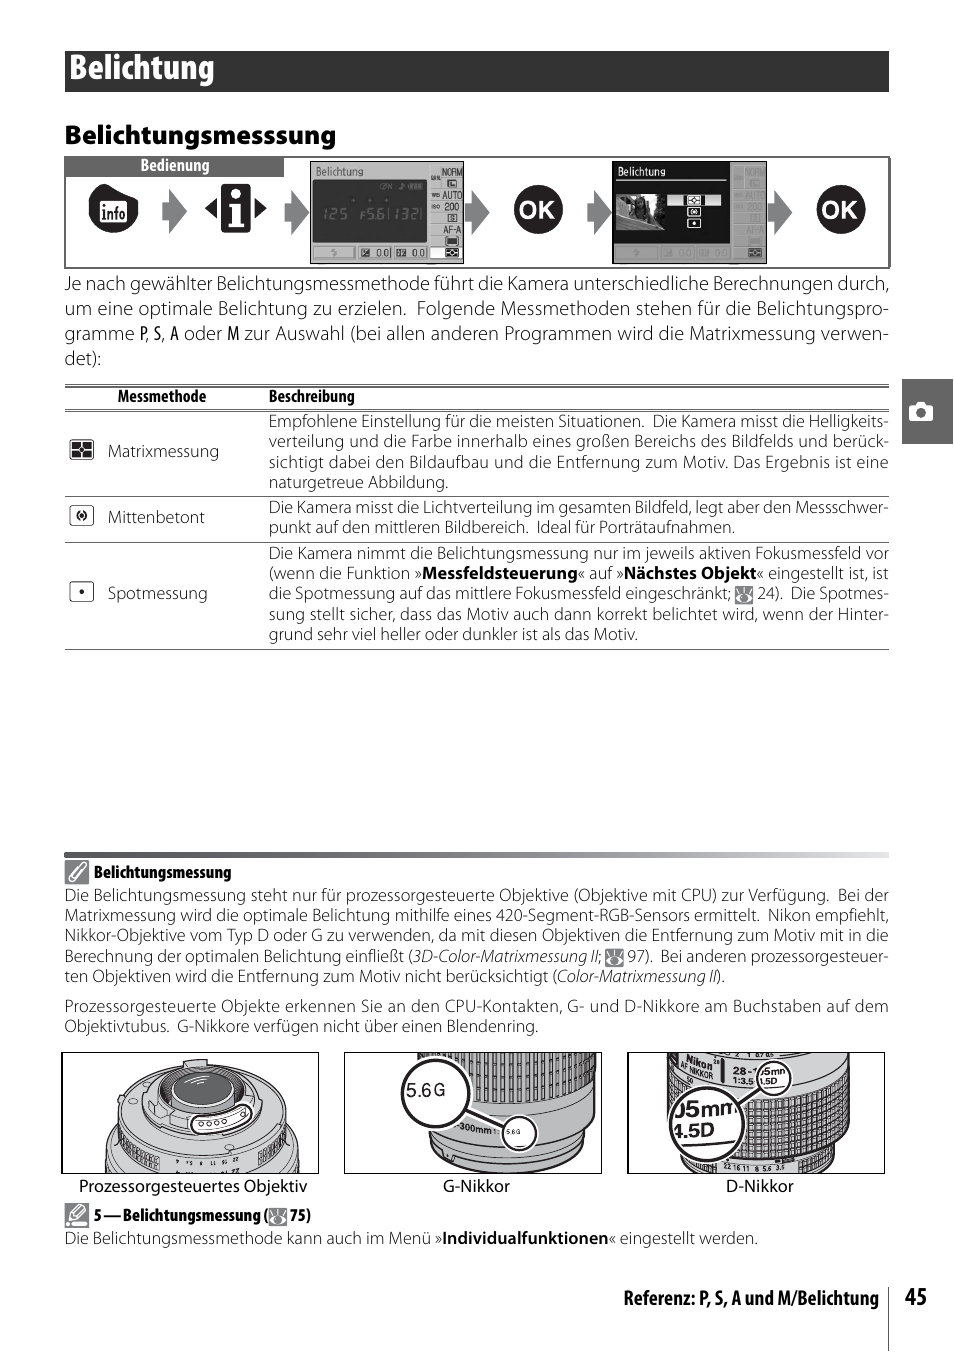 Belichtung, Belichtungsmesssung | Nikon D40 Benutzerhandbuch | Seite 57 / 139